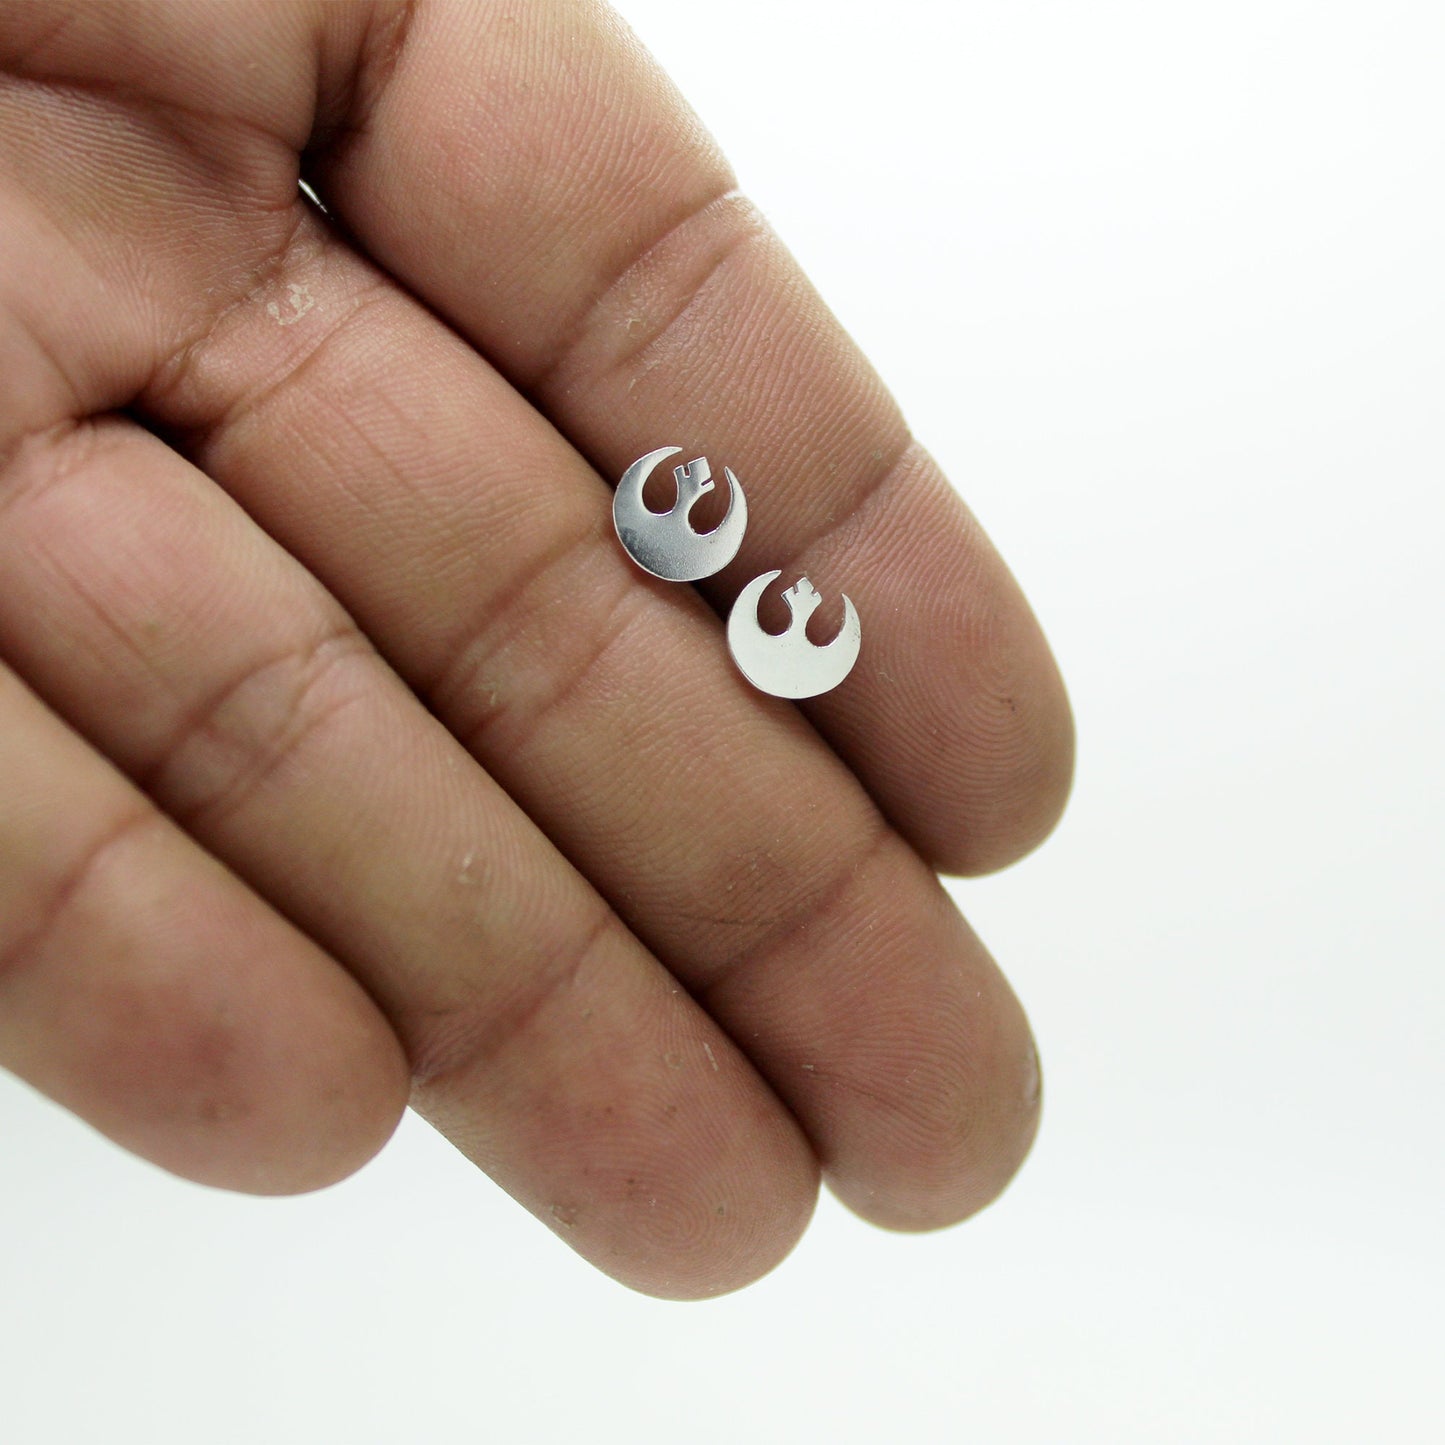 Rebel Alliance symbol Star Wars earrings in 925 silver